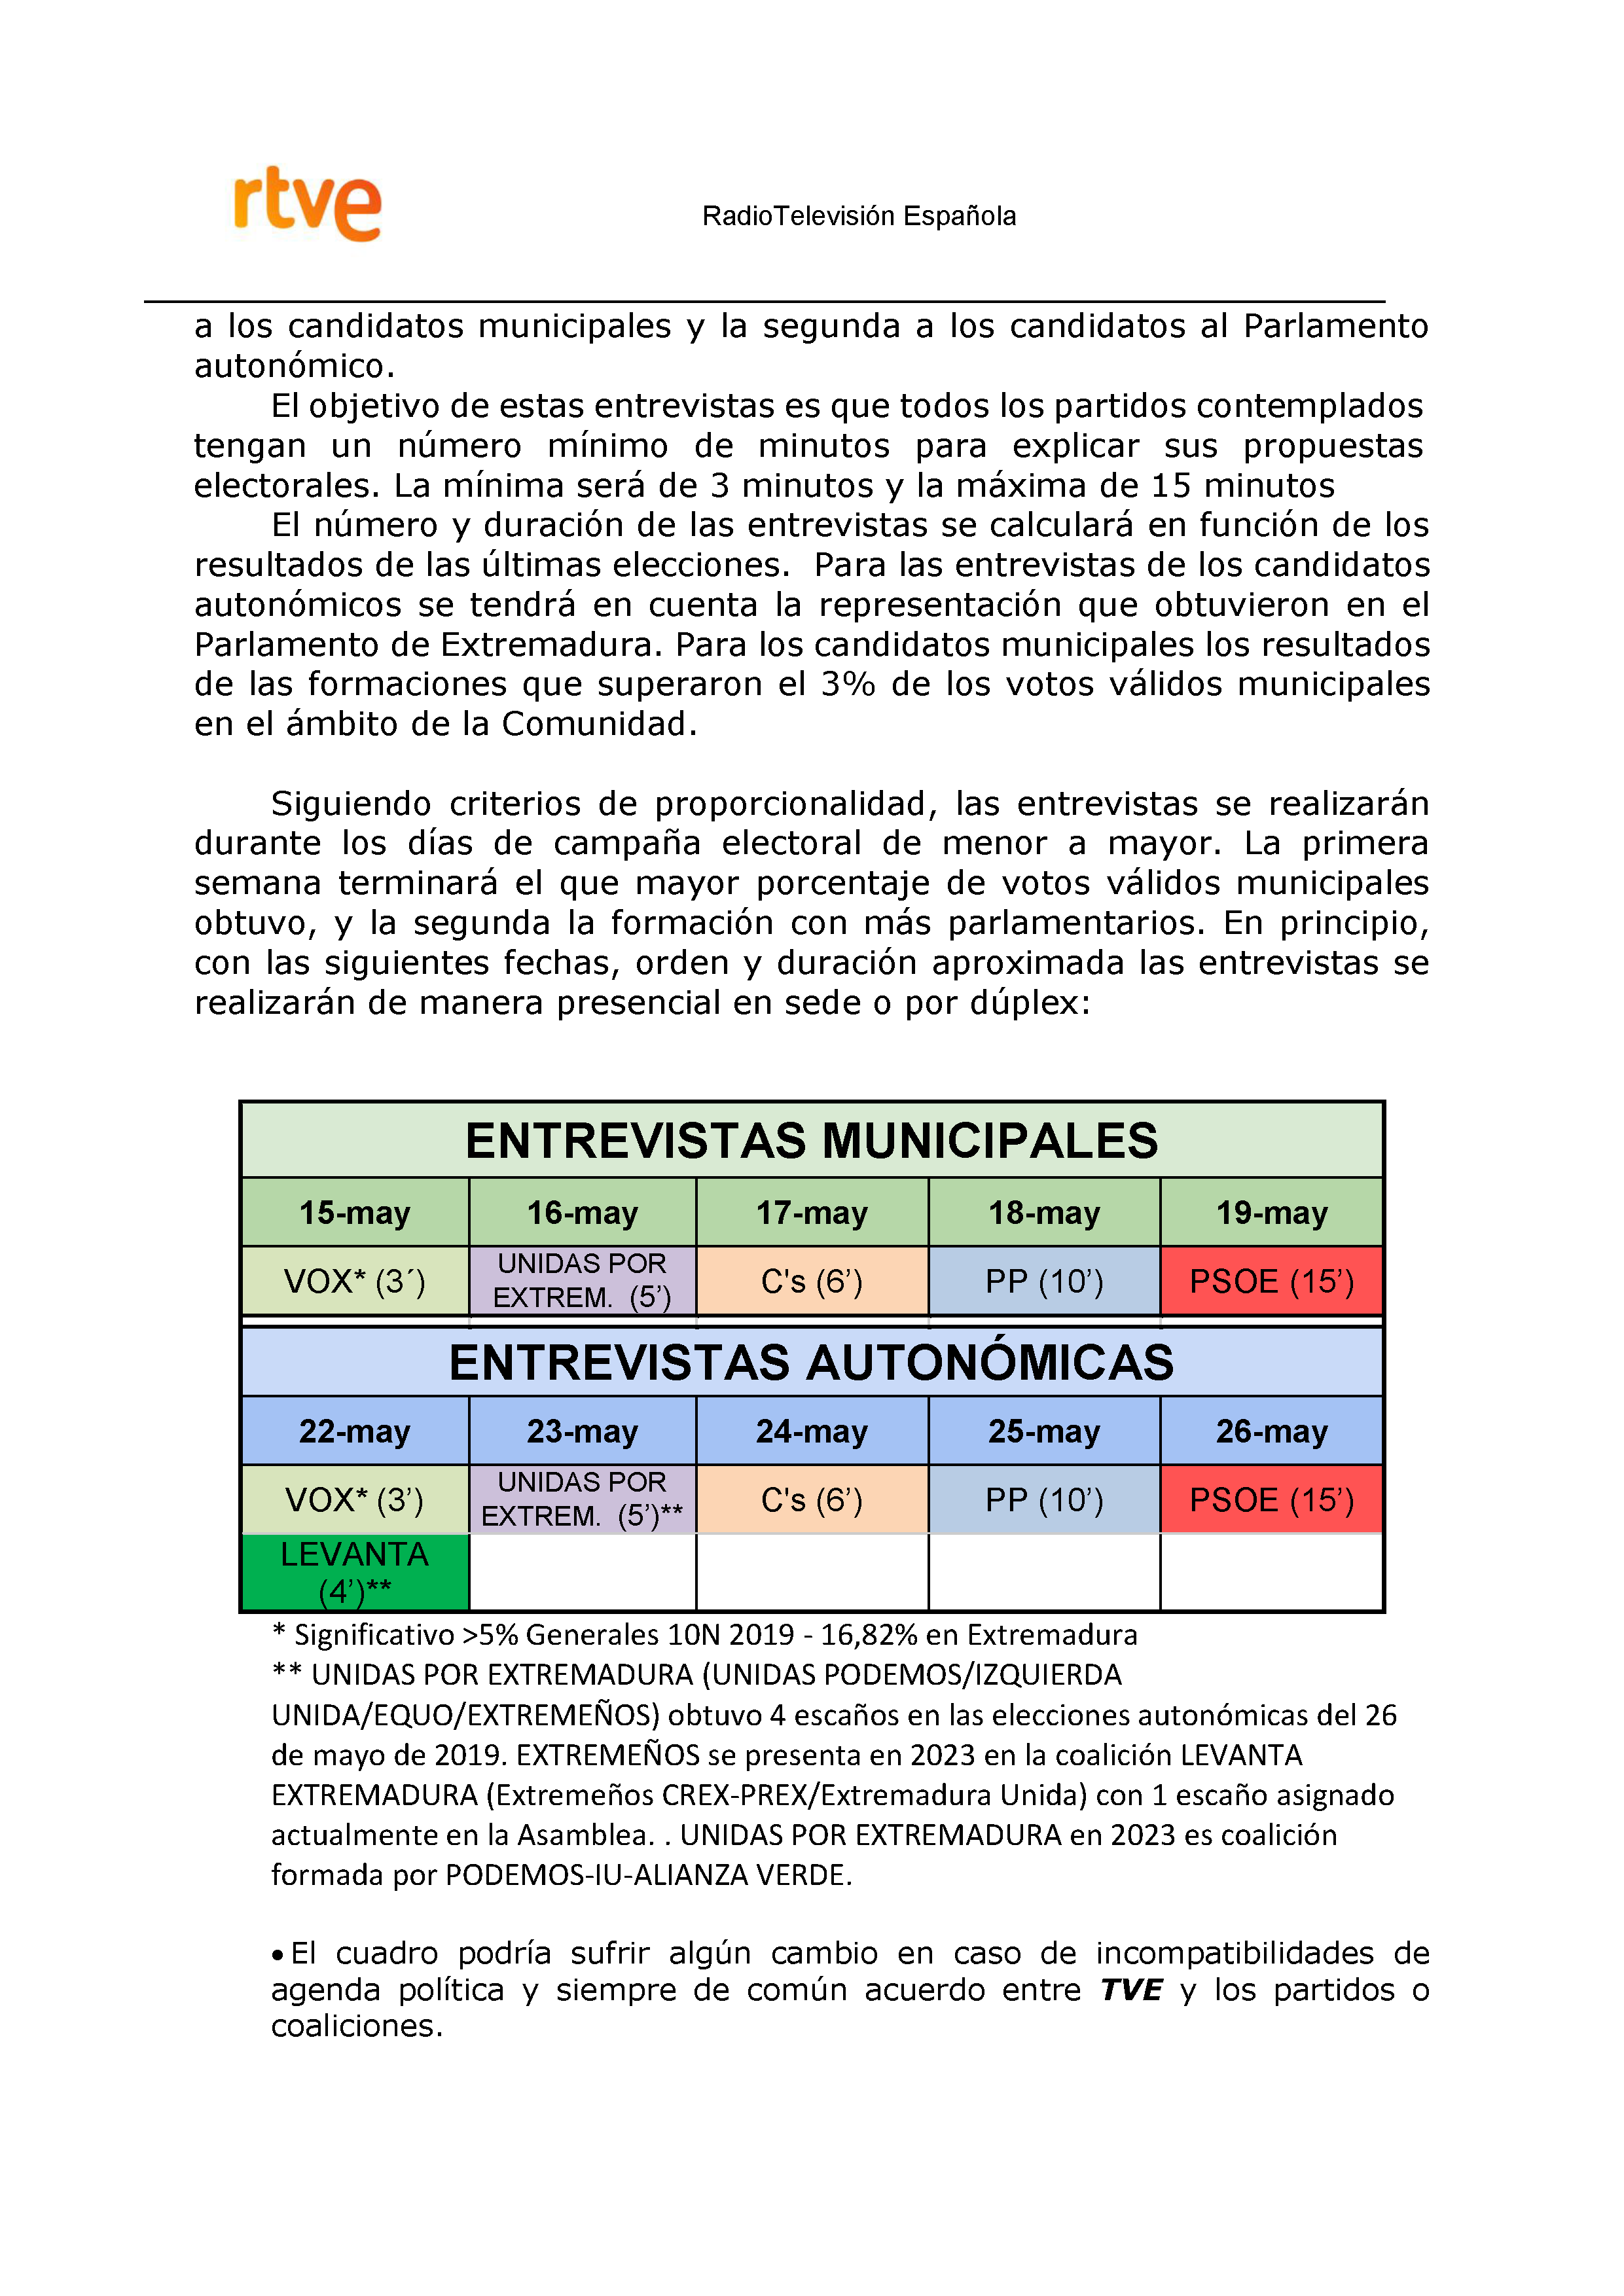 PLAN DE COBERTURA INFORMATIVA RTVE en Extremadura ELECCIONES MUNICIPALES Y AUTONÃ“MICAS Pag 7